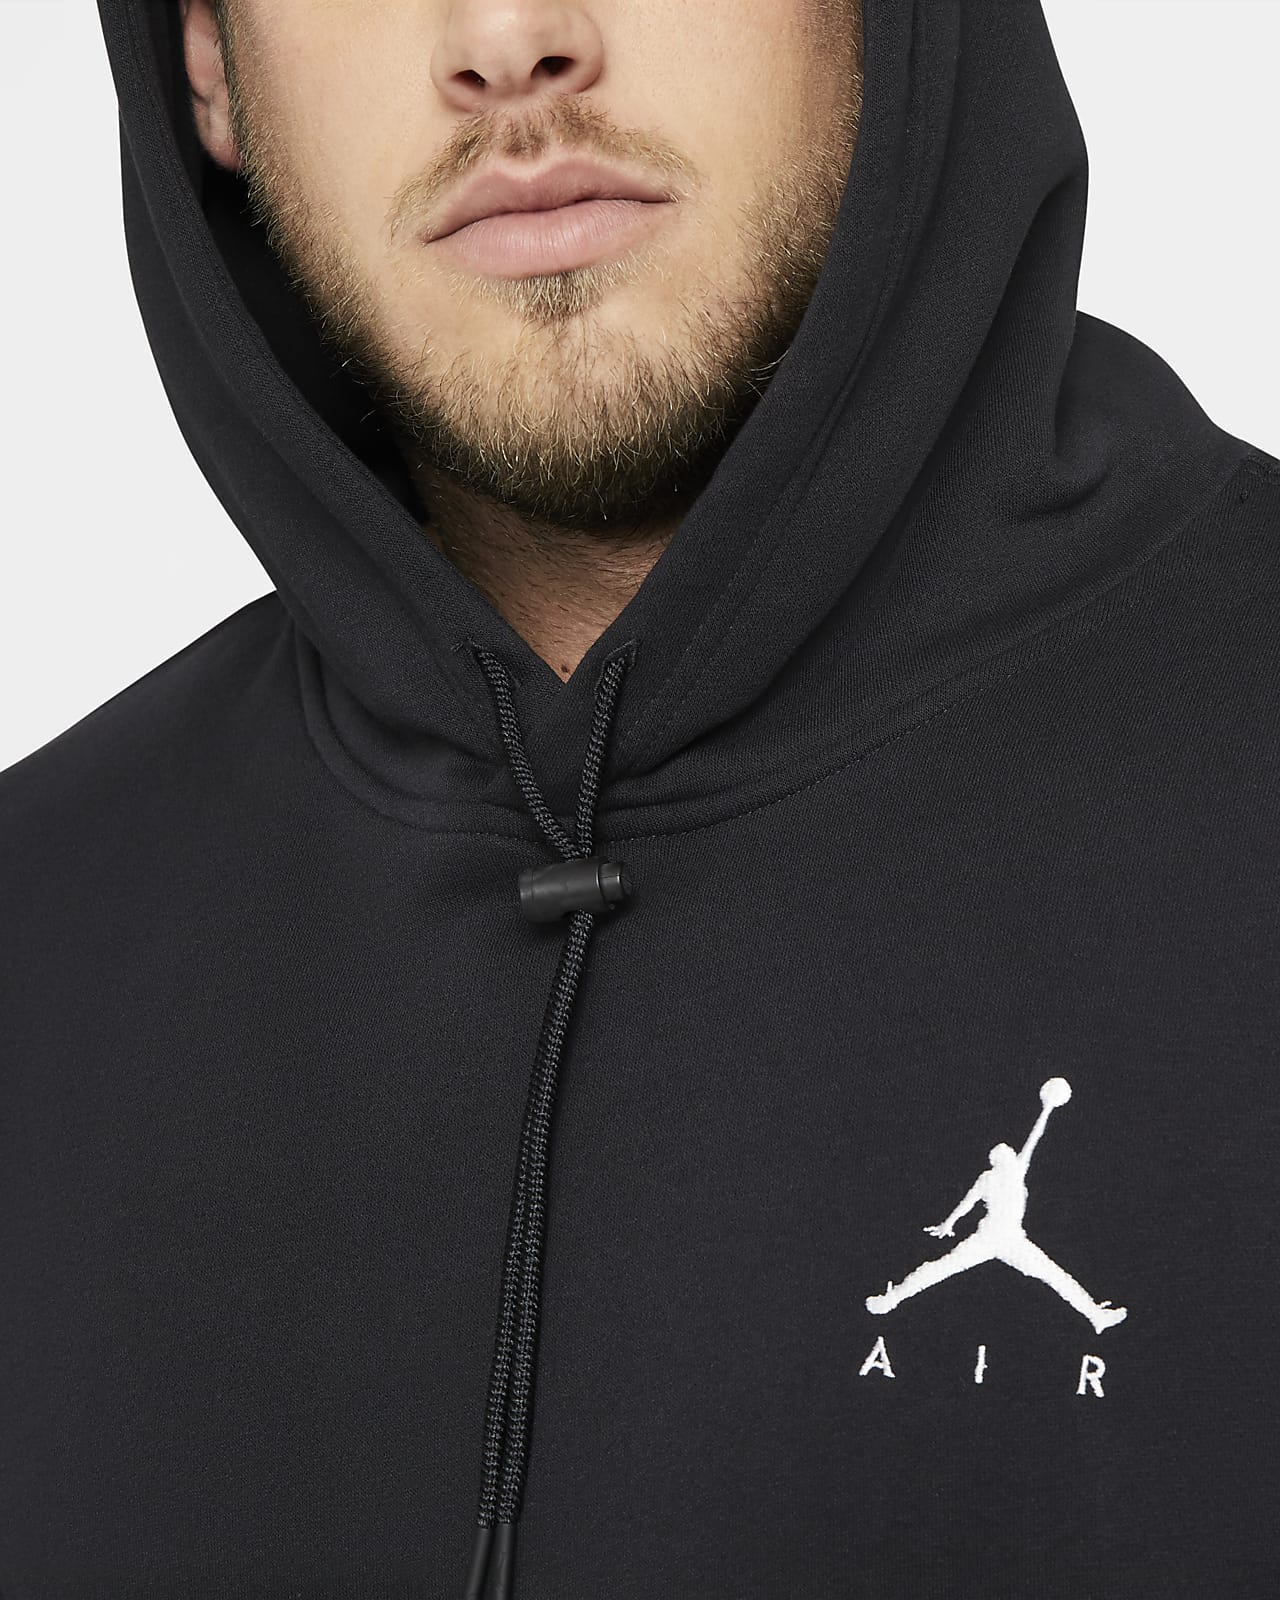 jordan 4xl hoodie Off 62% - yaren.com